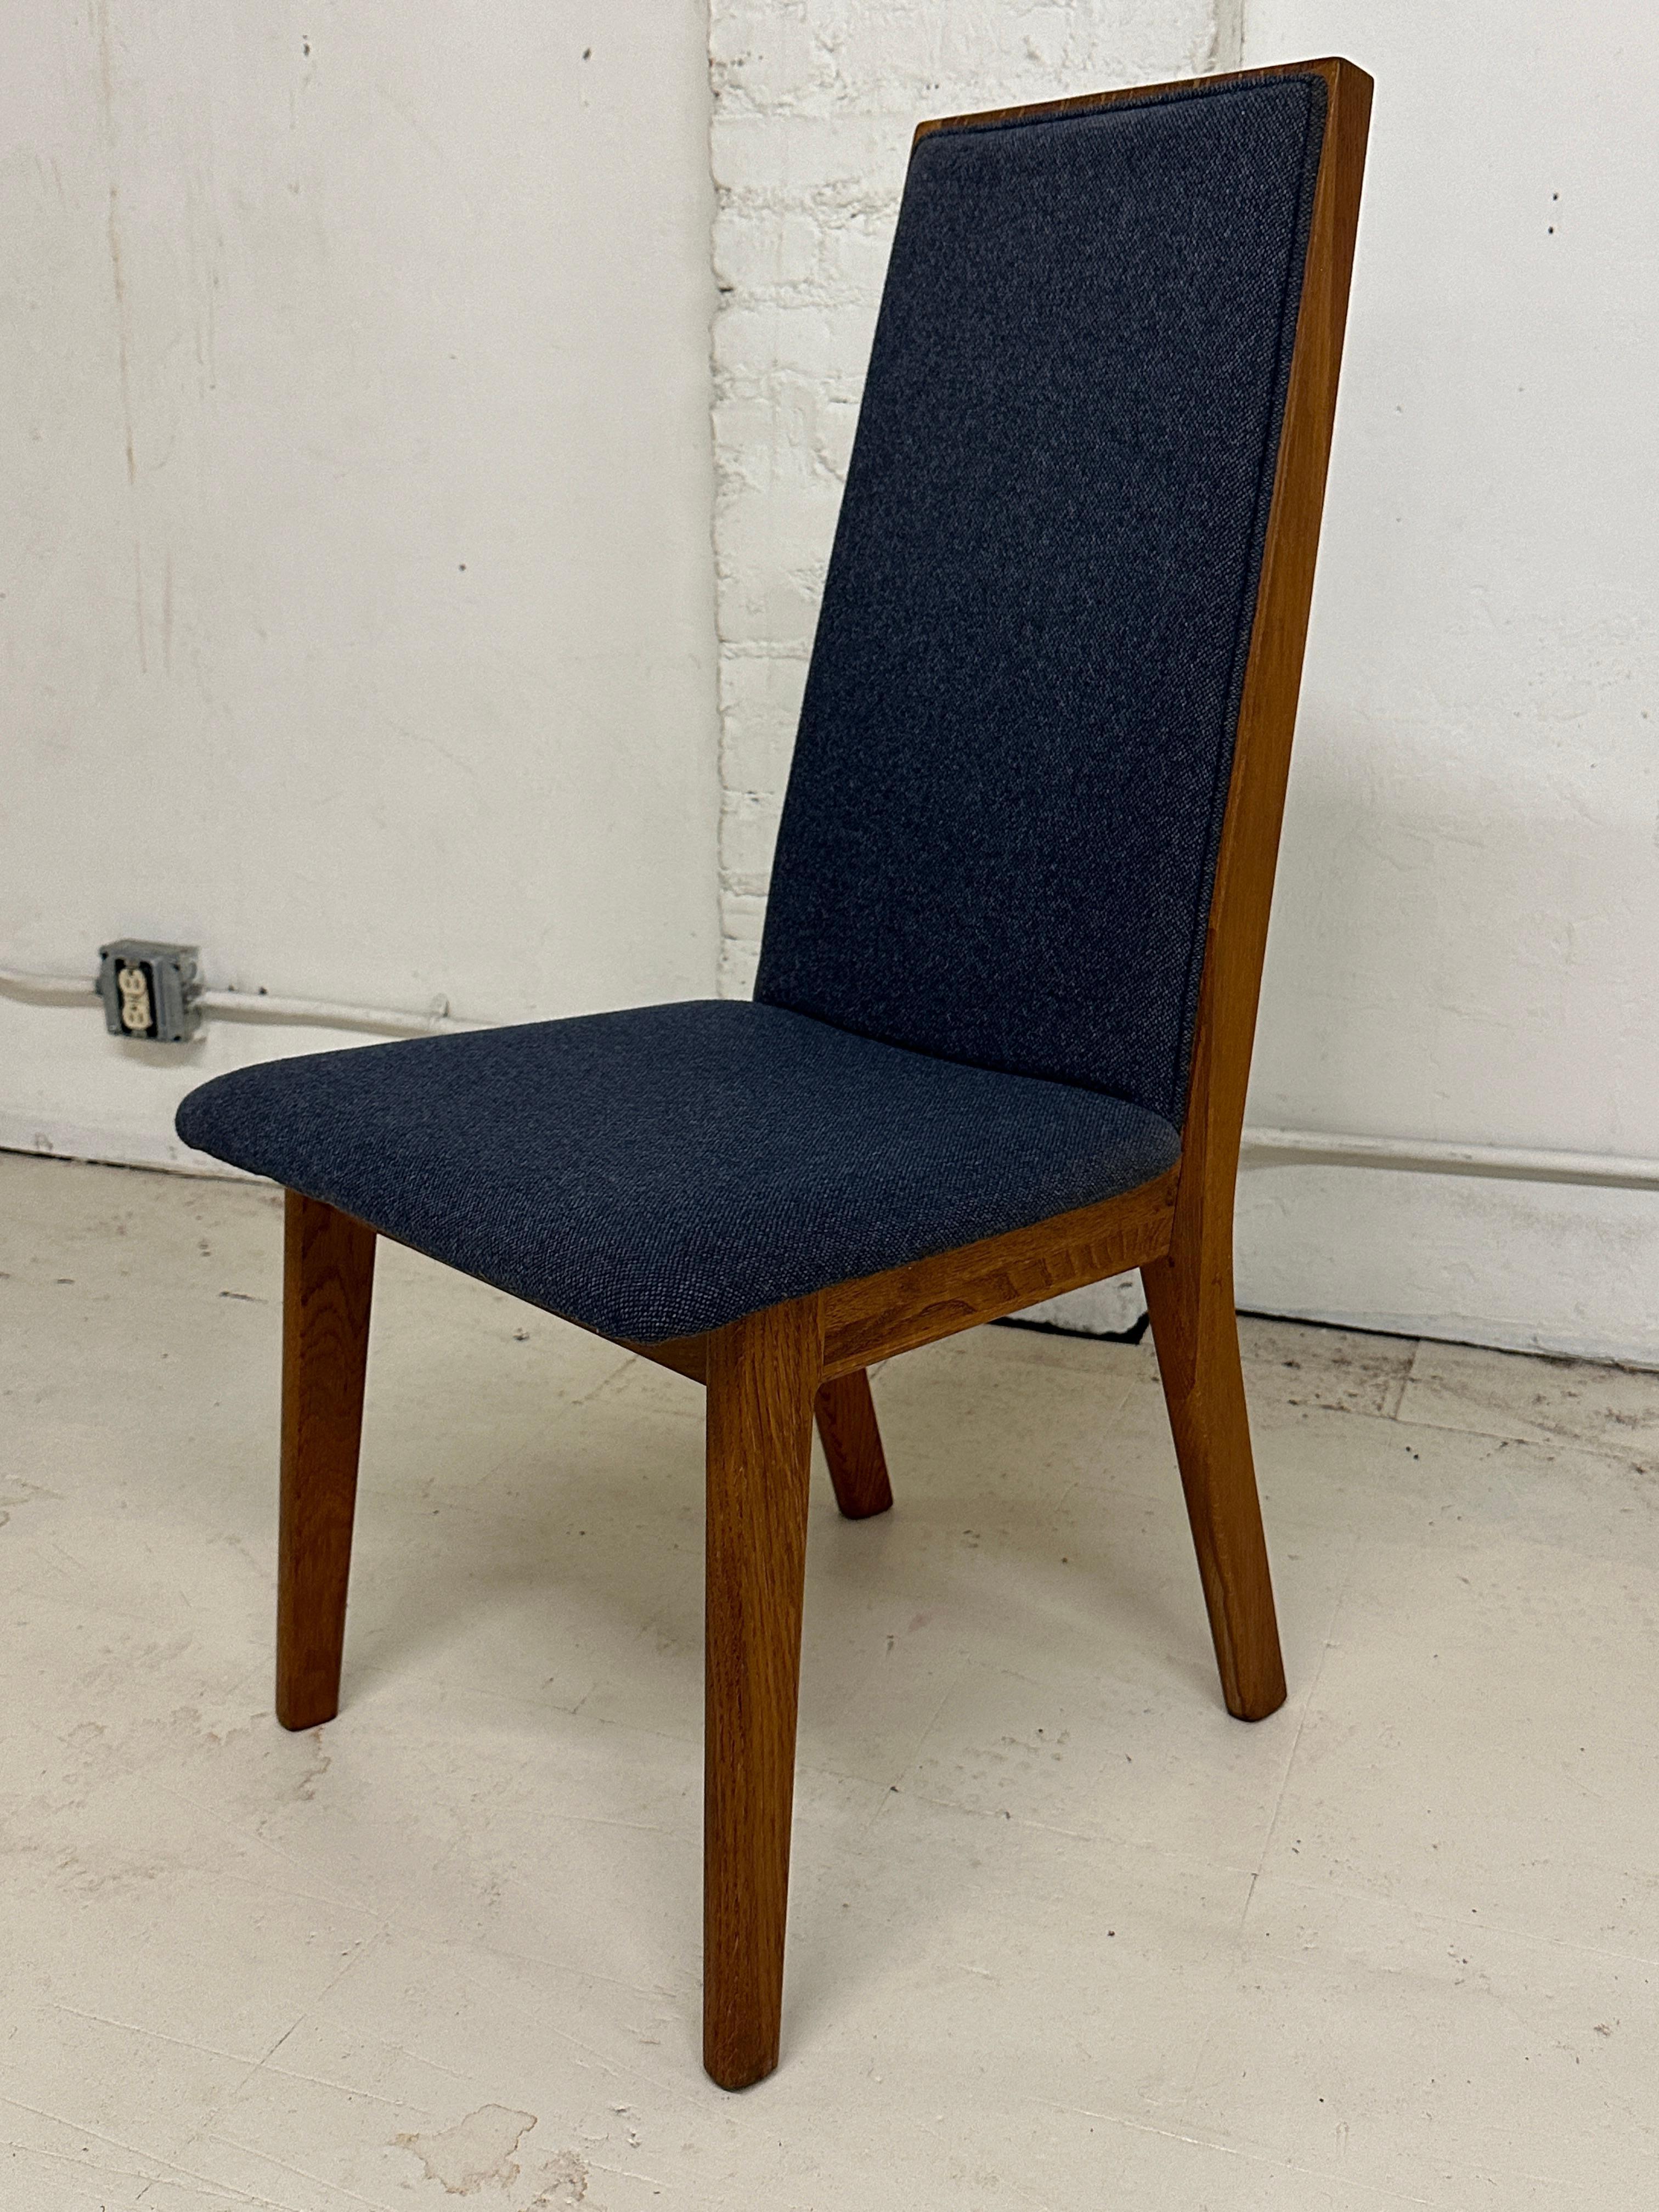 Cet ensemble de six chaises de salle à manger danoises a été fabriqué dans les années 1970 par le fabricant danois Dyrlund. Ils incarnent l'essence de l'esthétique moderne danoise du milieu du siècle. 
Dyrlund, pionnier du mouvement moderne du